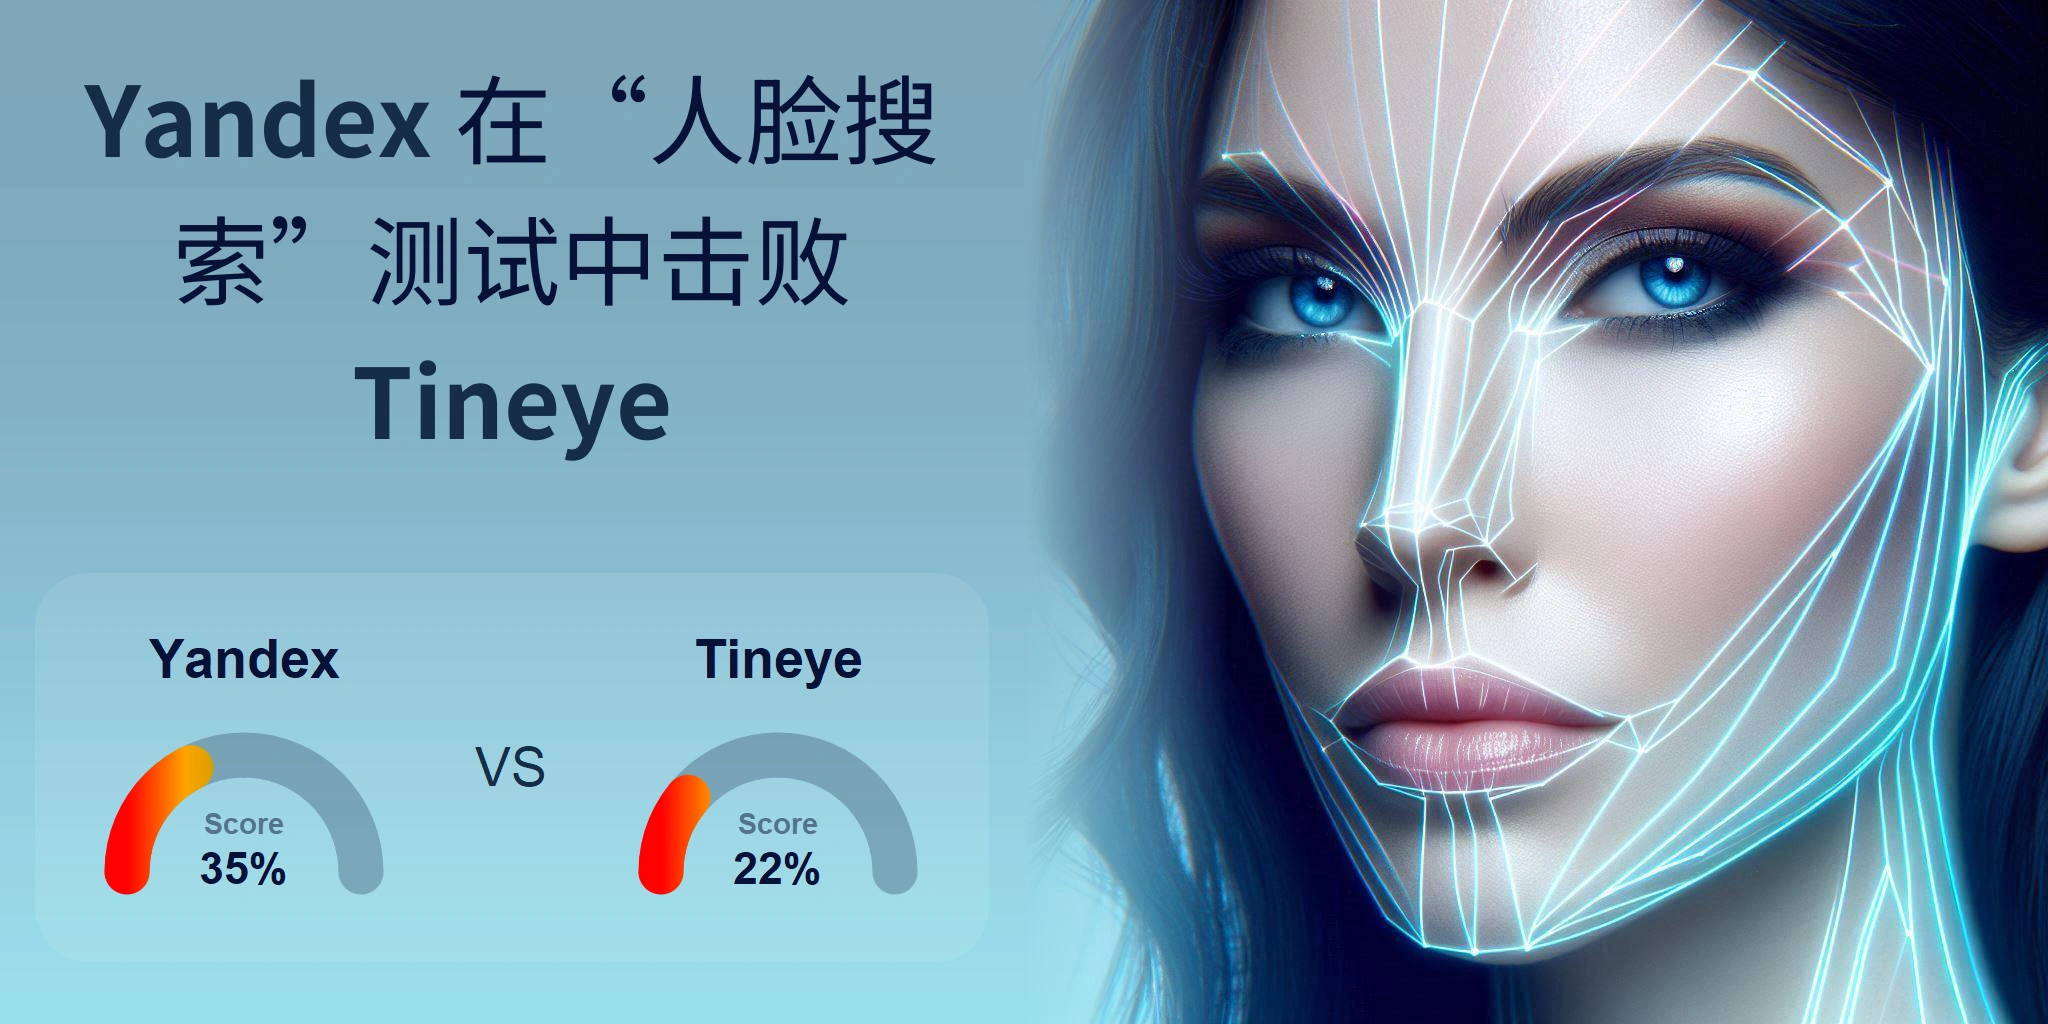 哪一个更适合人脸搜索：<br>Tineye 还是 Yandex？